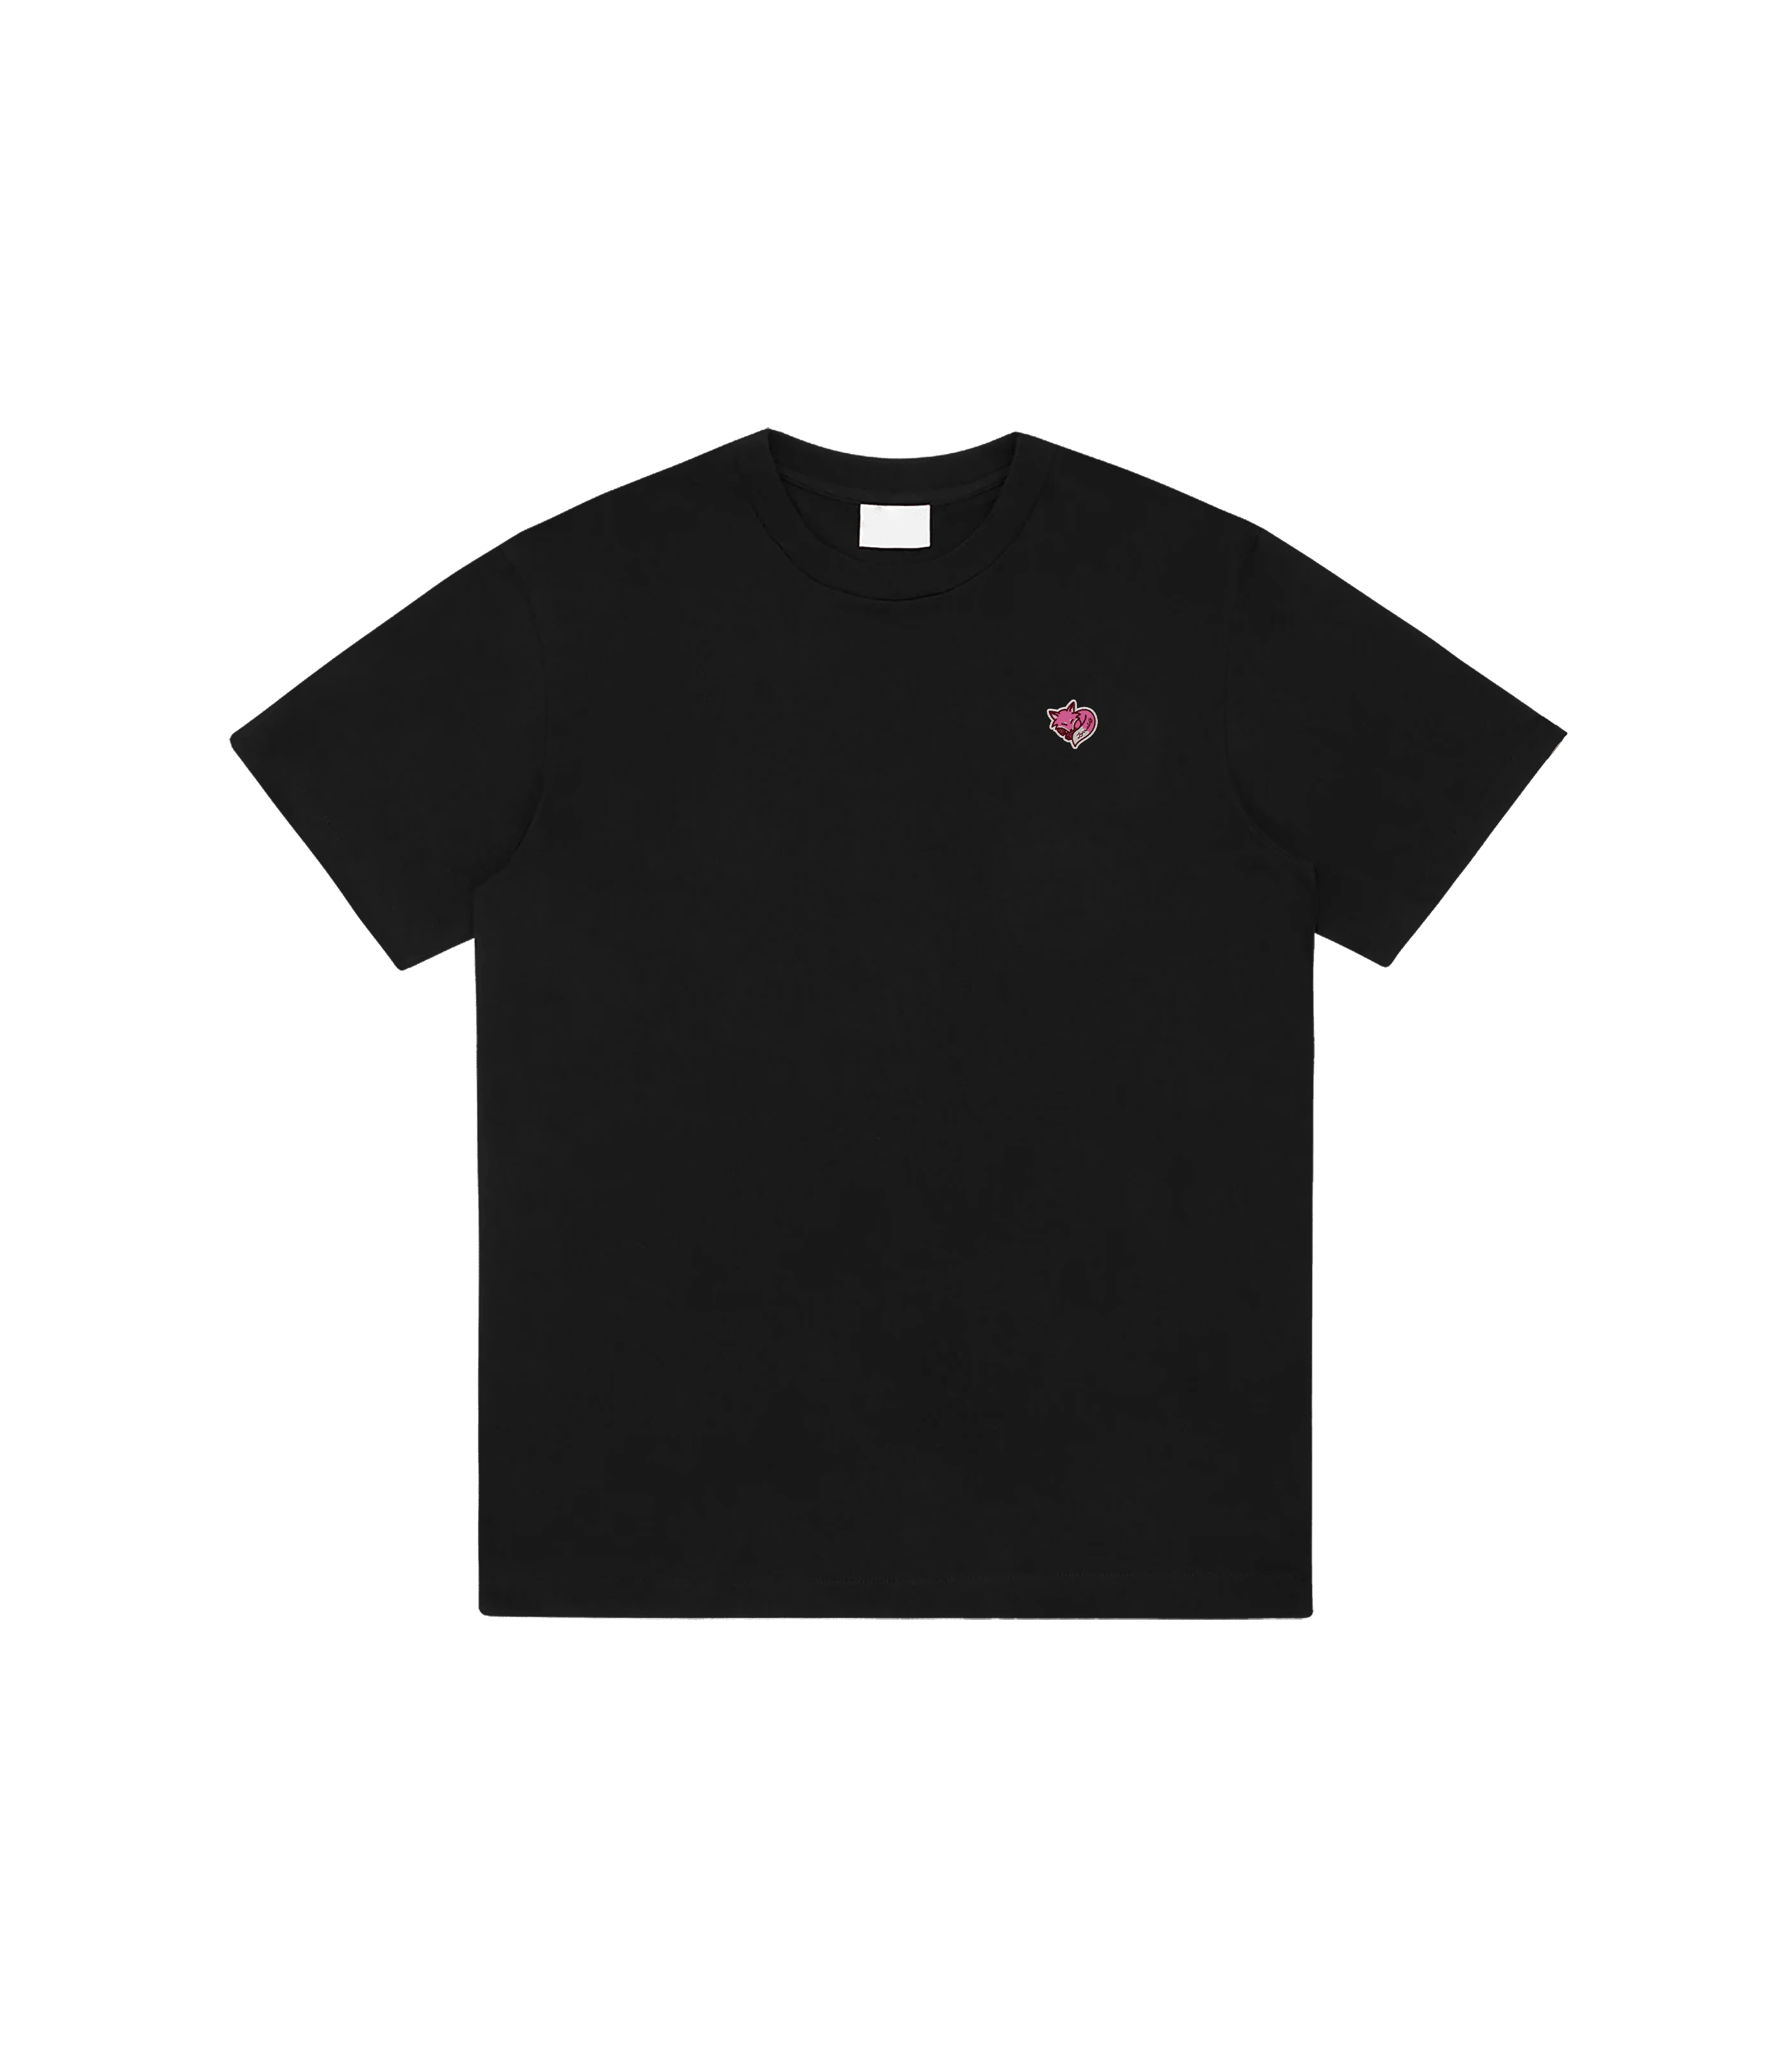 Zorro Stuff T-Shirts S / Black Cupid Black Tee